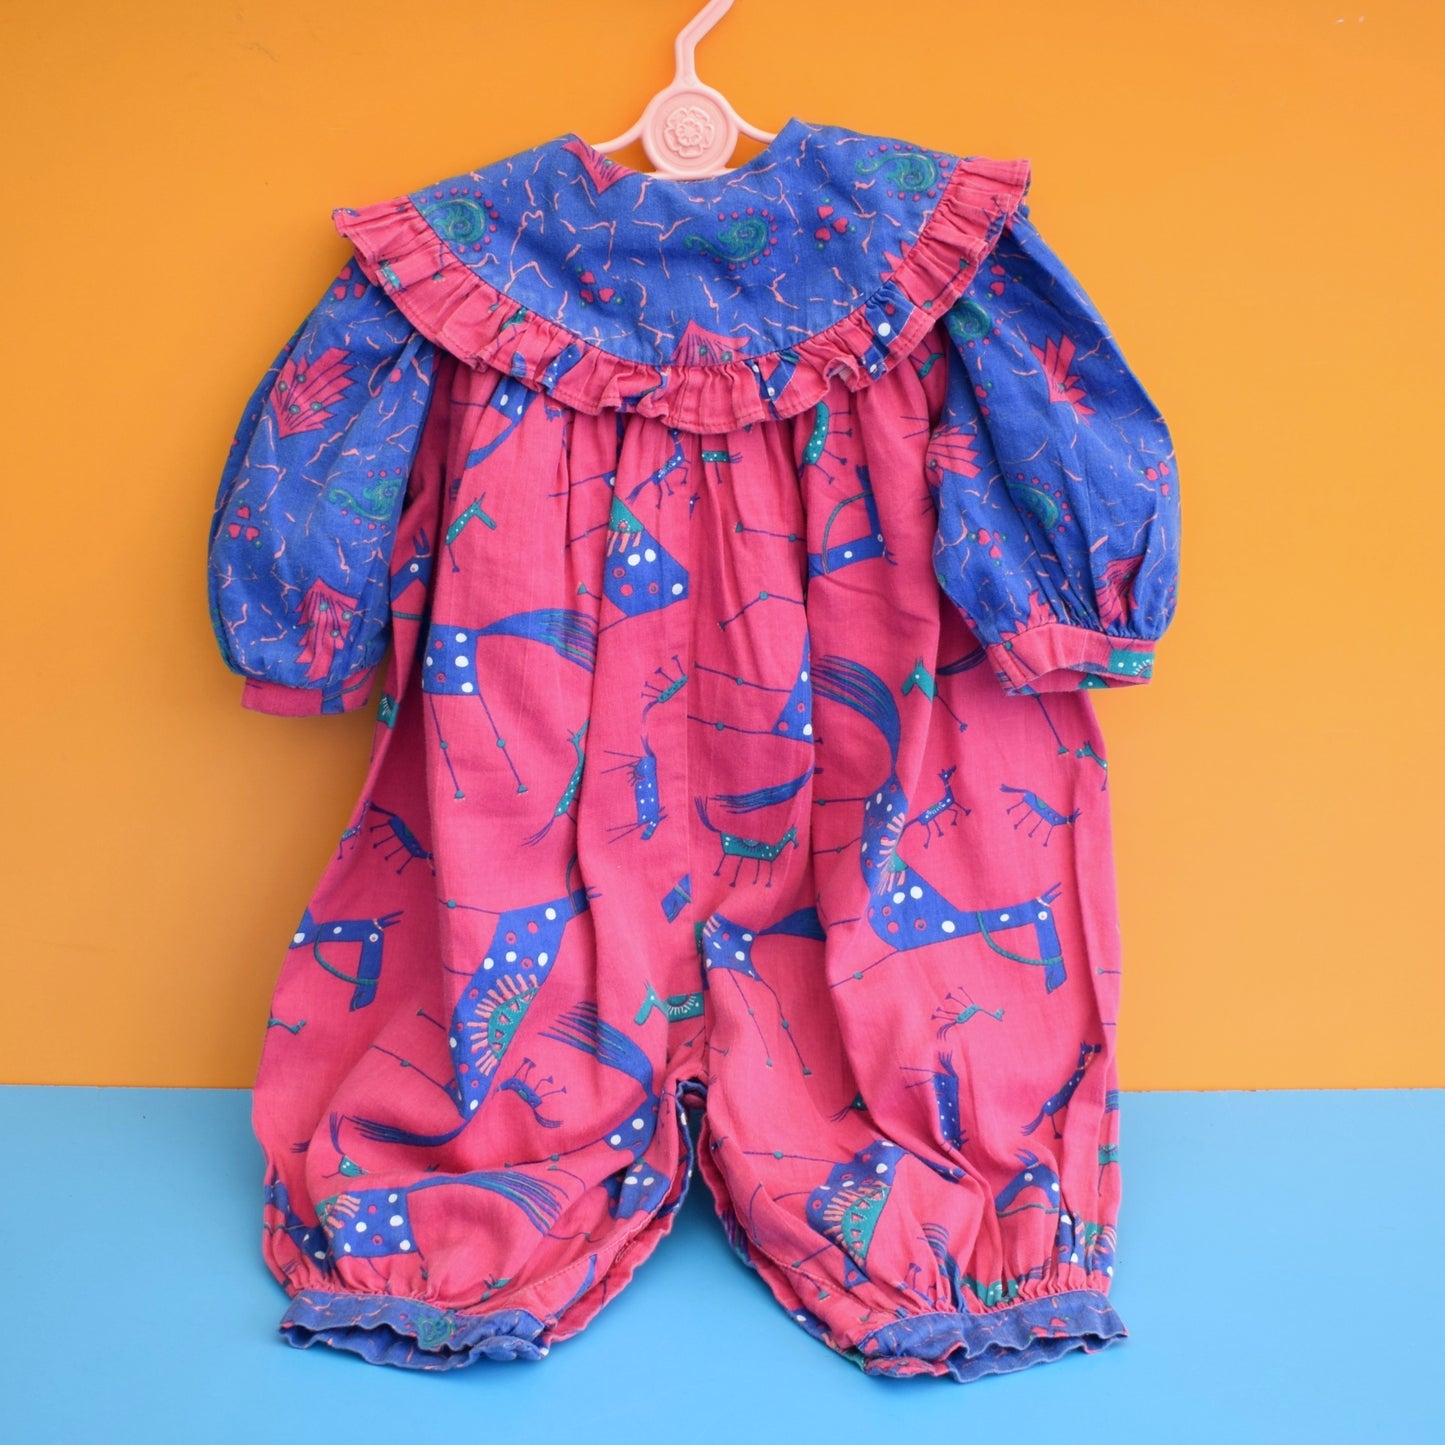 Vintage 1980s Baby Romper - Little Darlings - 1 yr - Pink & Blue